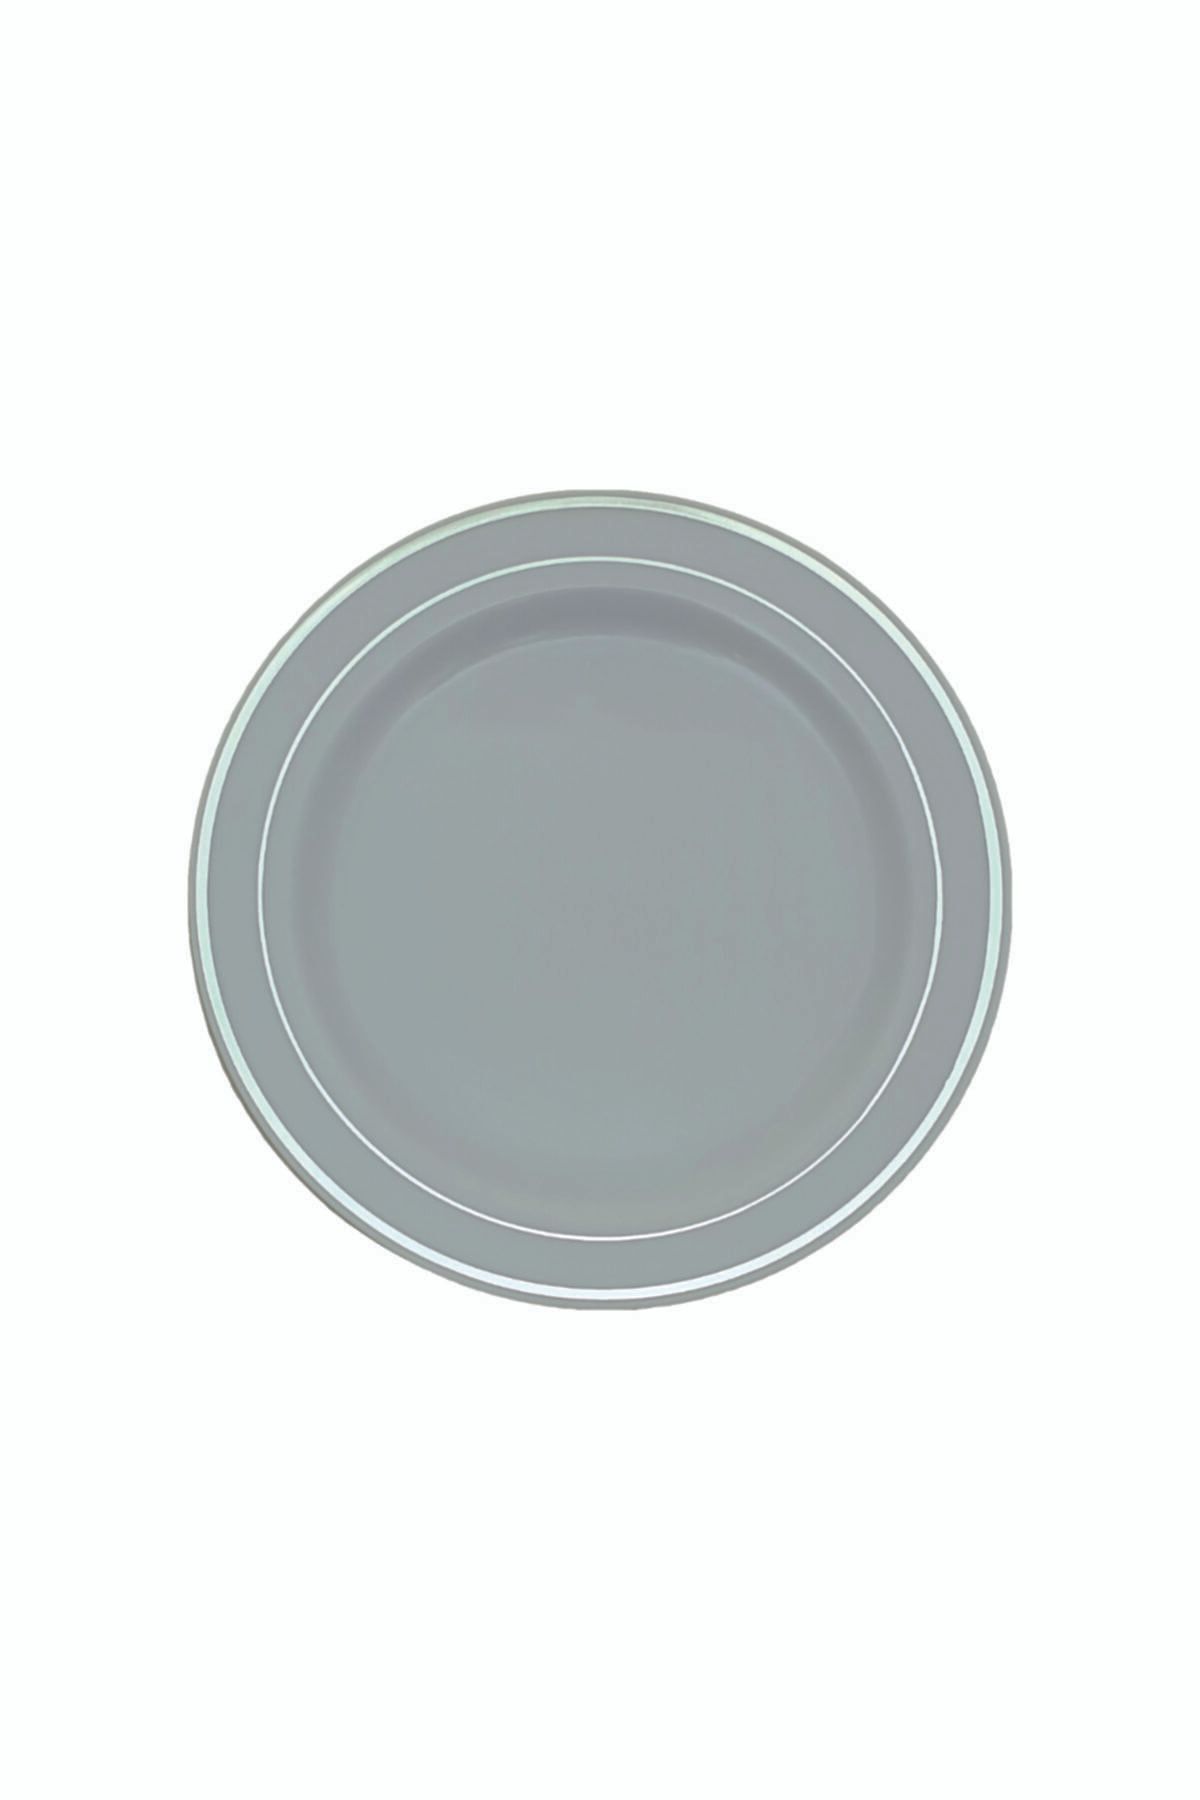 KullanAt Market Porselen Görünümlü Gümüş Plastik Tabak - 6 Adet Şık Ve Lüks Parti/davet Tabağı